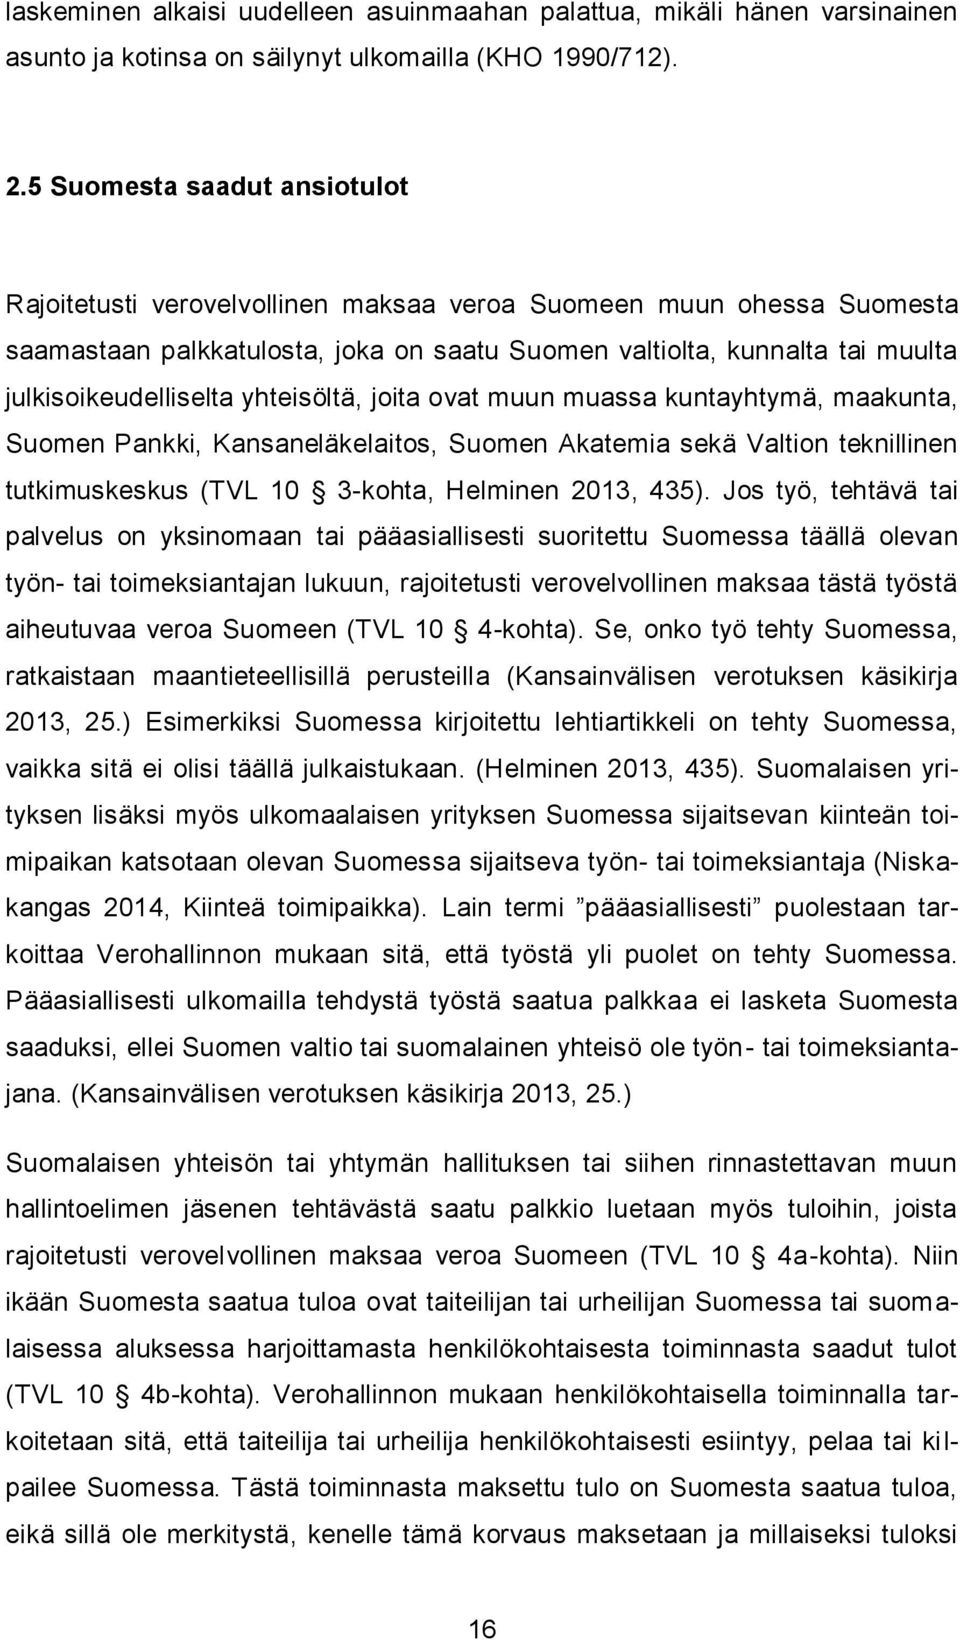 yhteisöltä, joita ovat muun muassa kuntayhtymä, maakunta, Suomen Pankki, Kansaneläkelaitos, Suomen Akatemia sekä Valtion teknillinen tutkimuskeskus (TVL 10 3-kohta, Helminen 2013, 435).